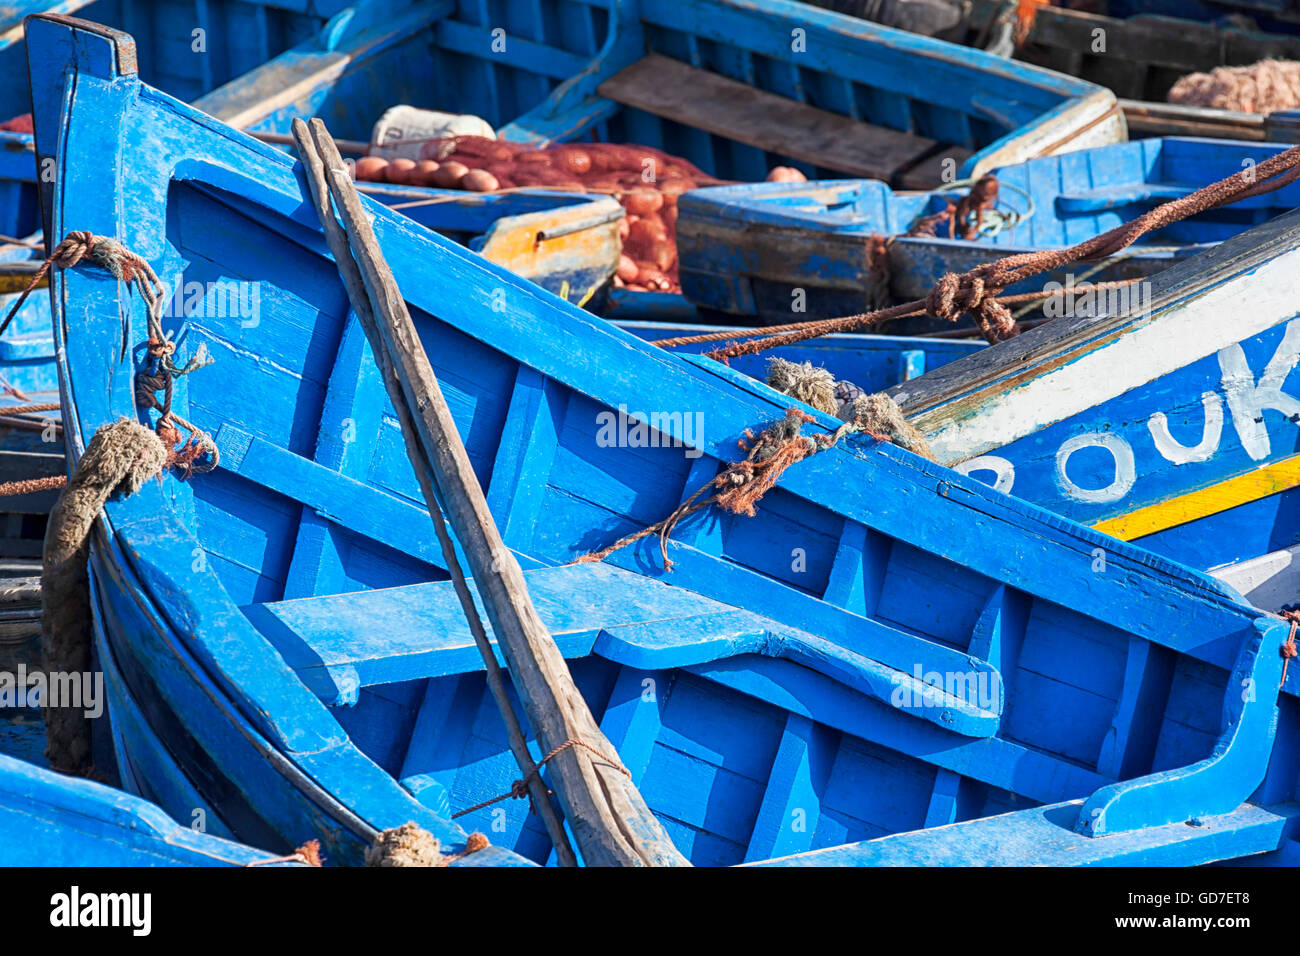 Blue fishing boats in Essaouira. Stock Photo